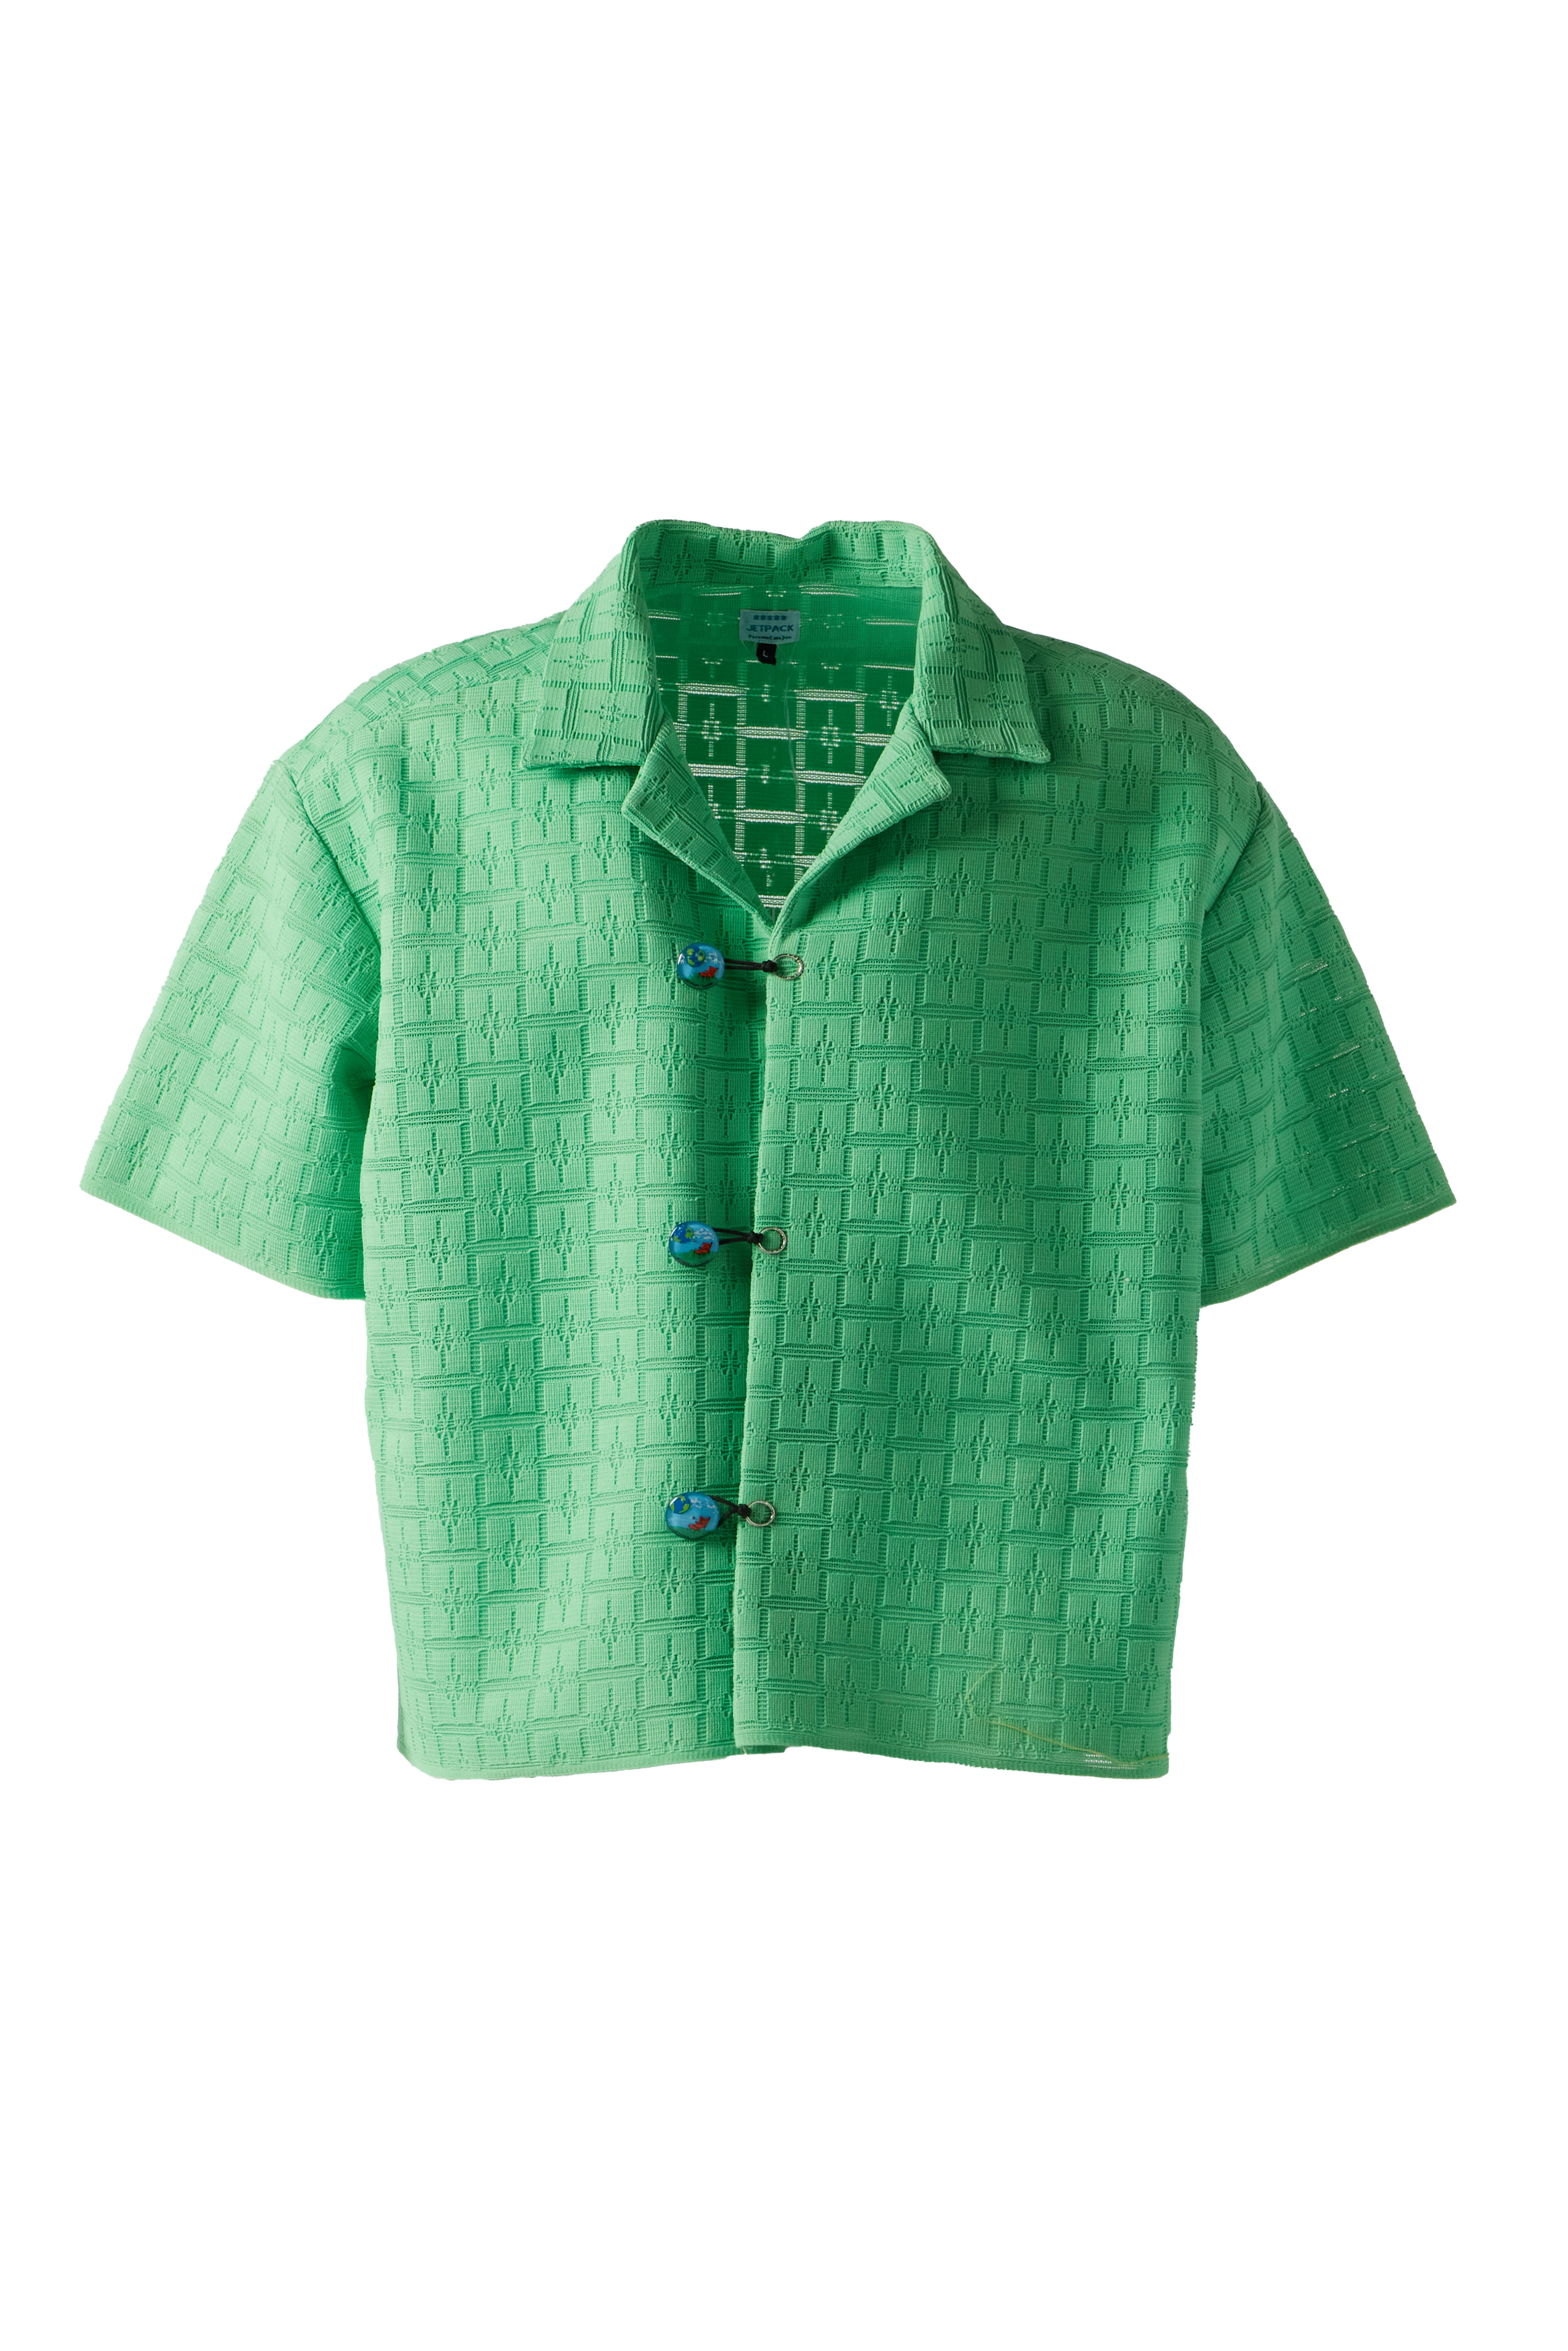 JETPACK HOM(M)E - Retro Knit Shirt product image